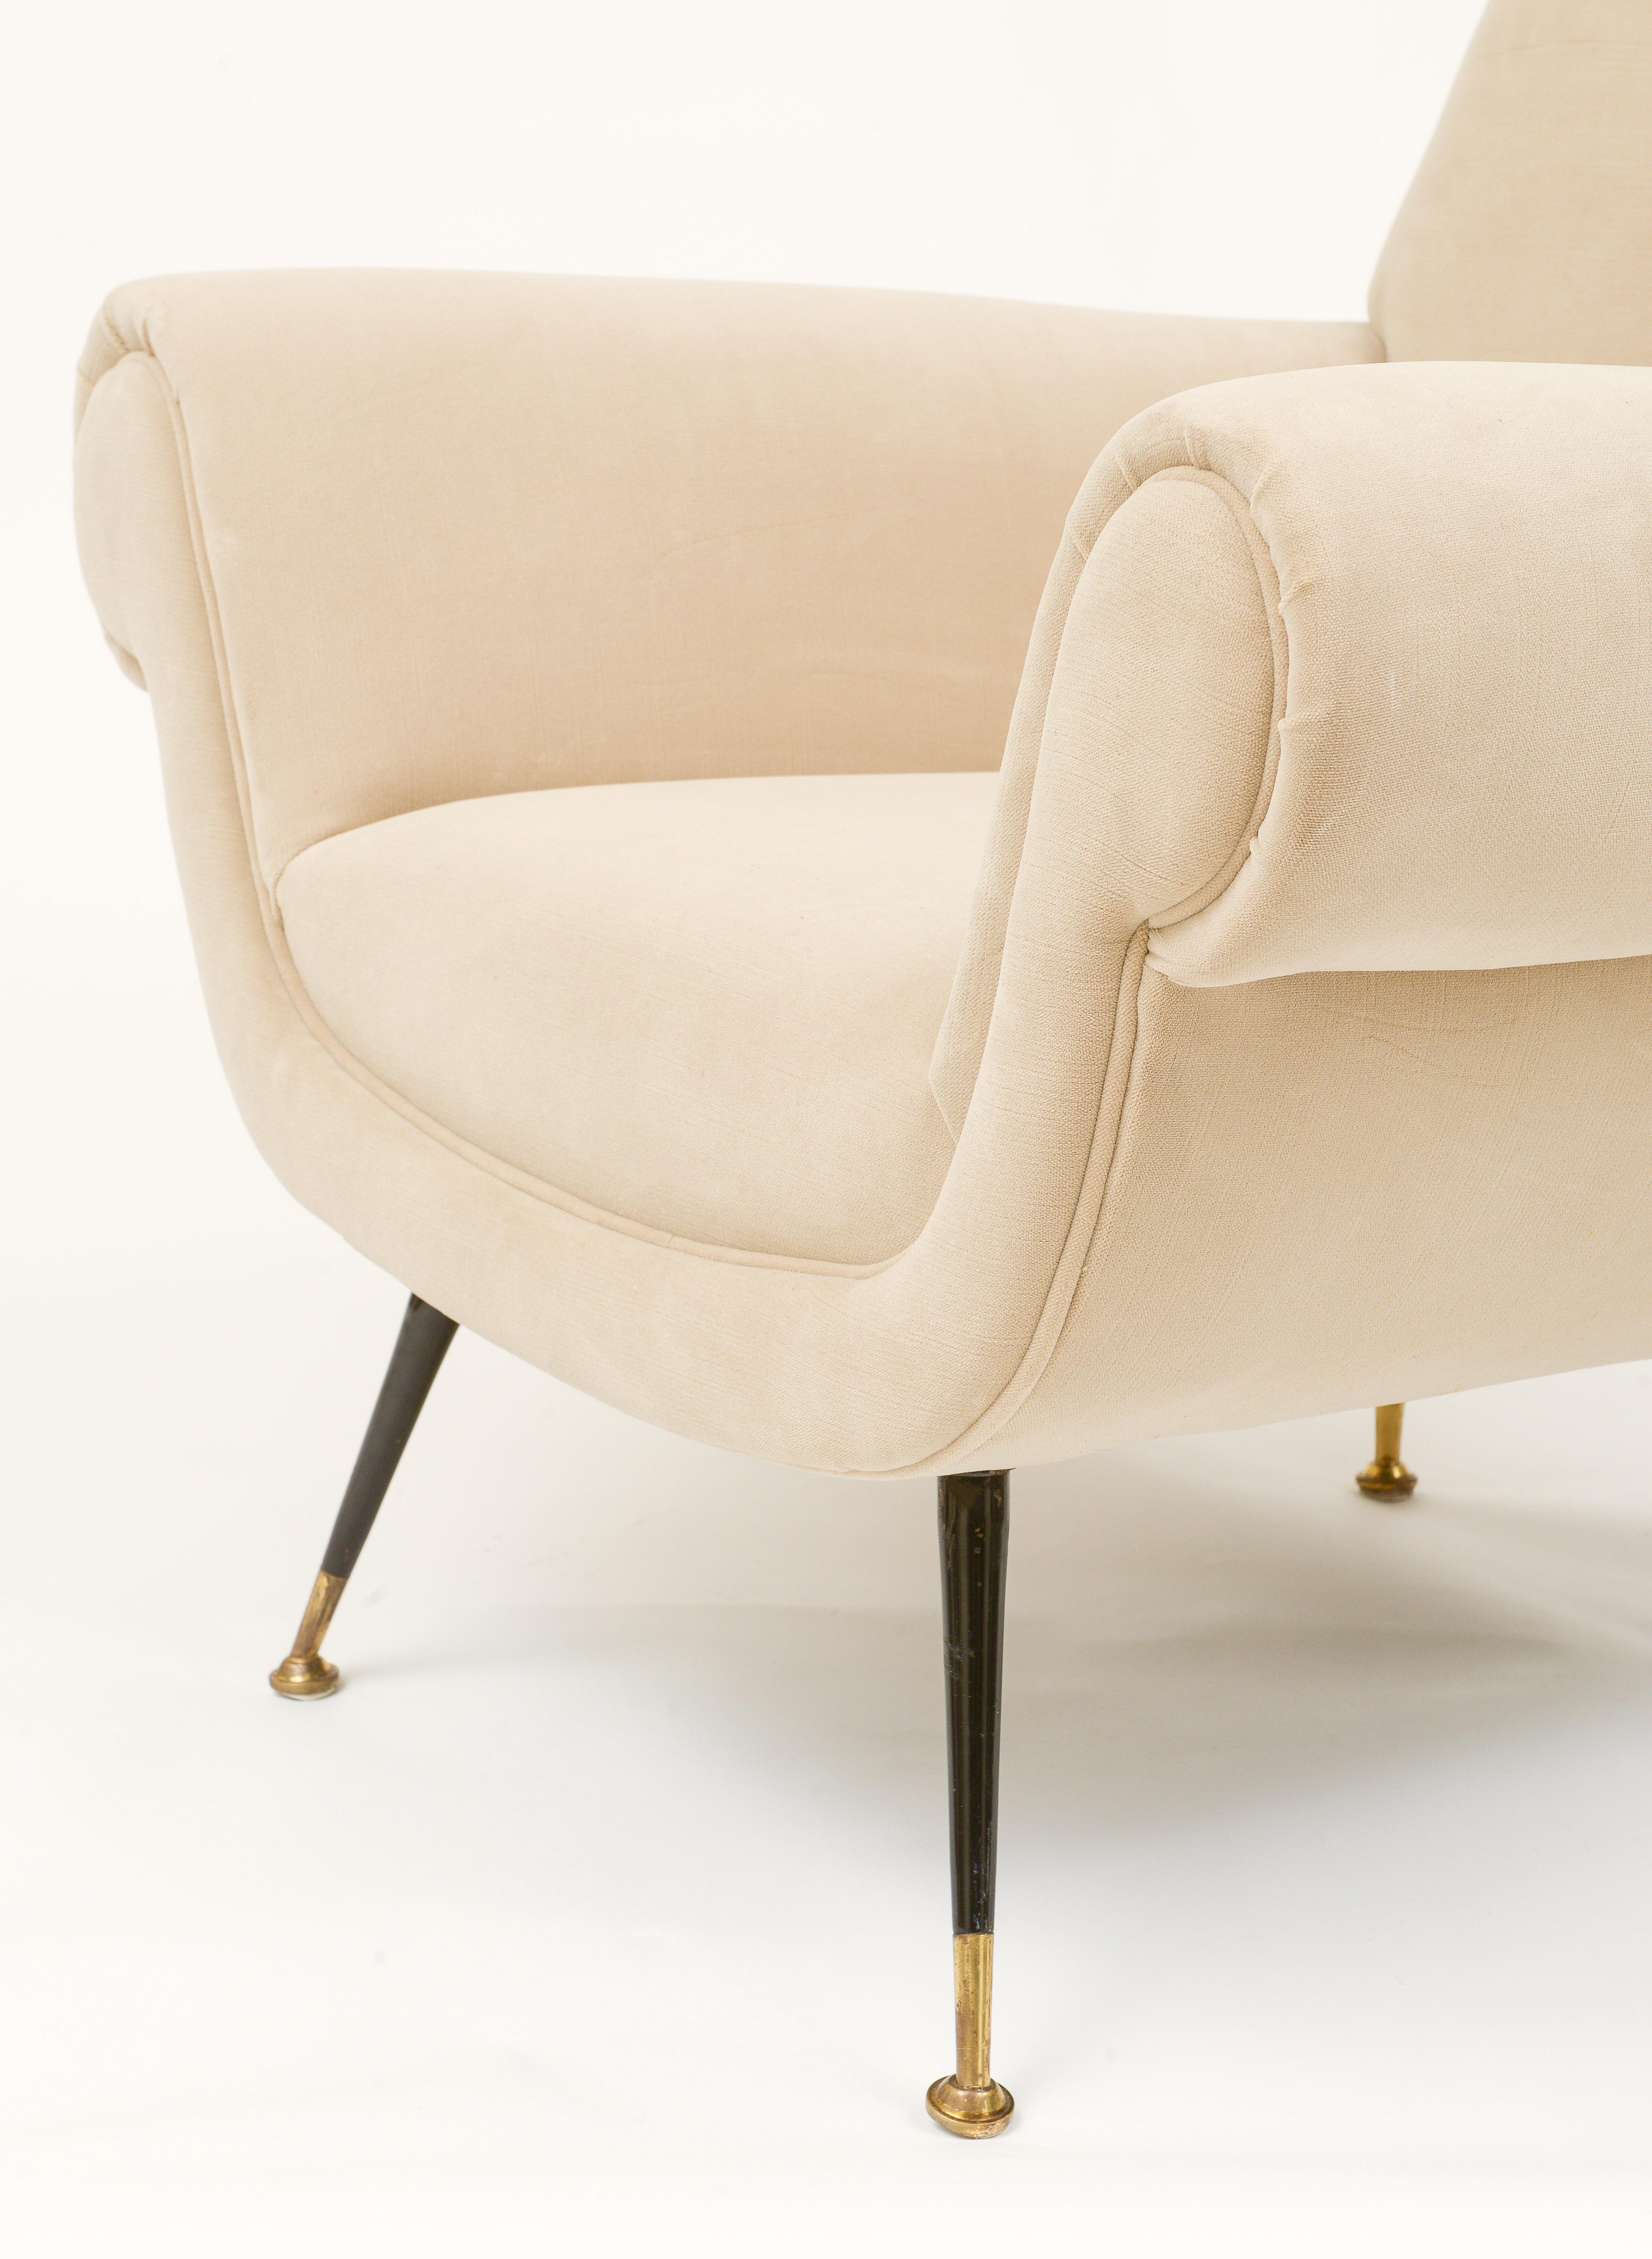 Gigi Radice, Minotti Pair White Italian Lounge Chairs Brass Feet, 1950's 1